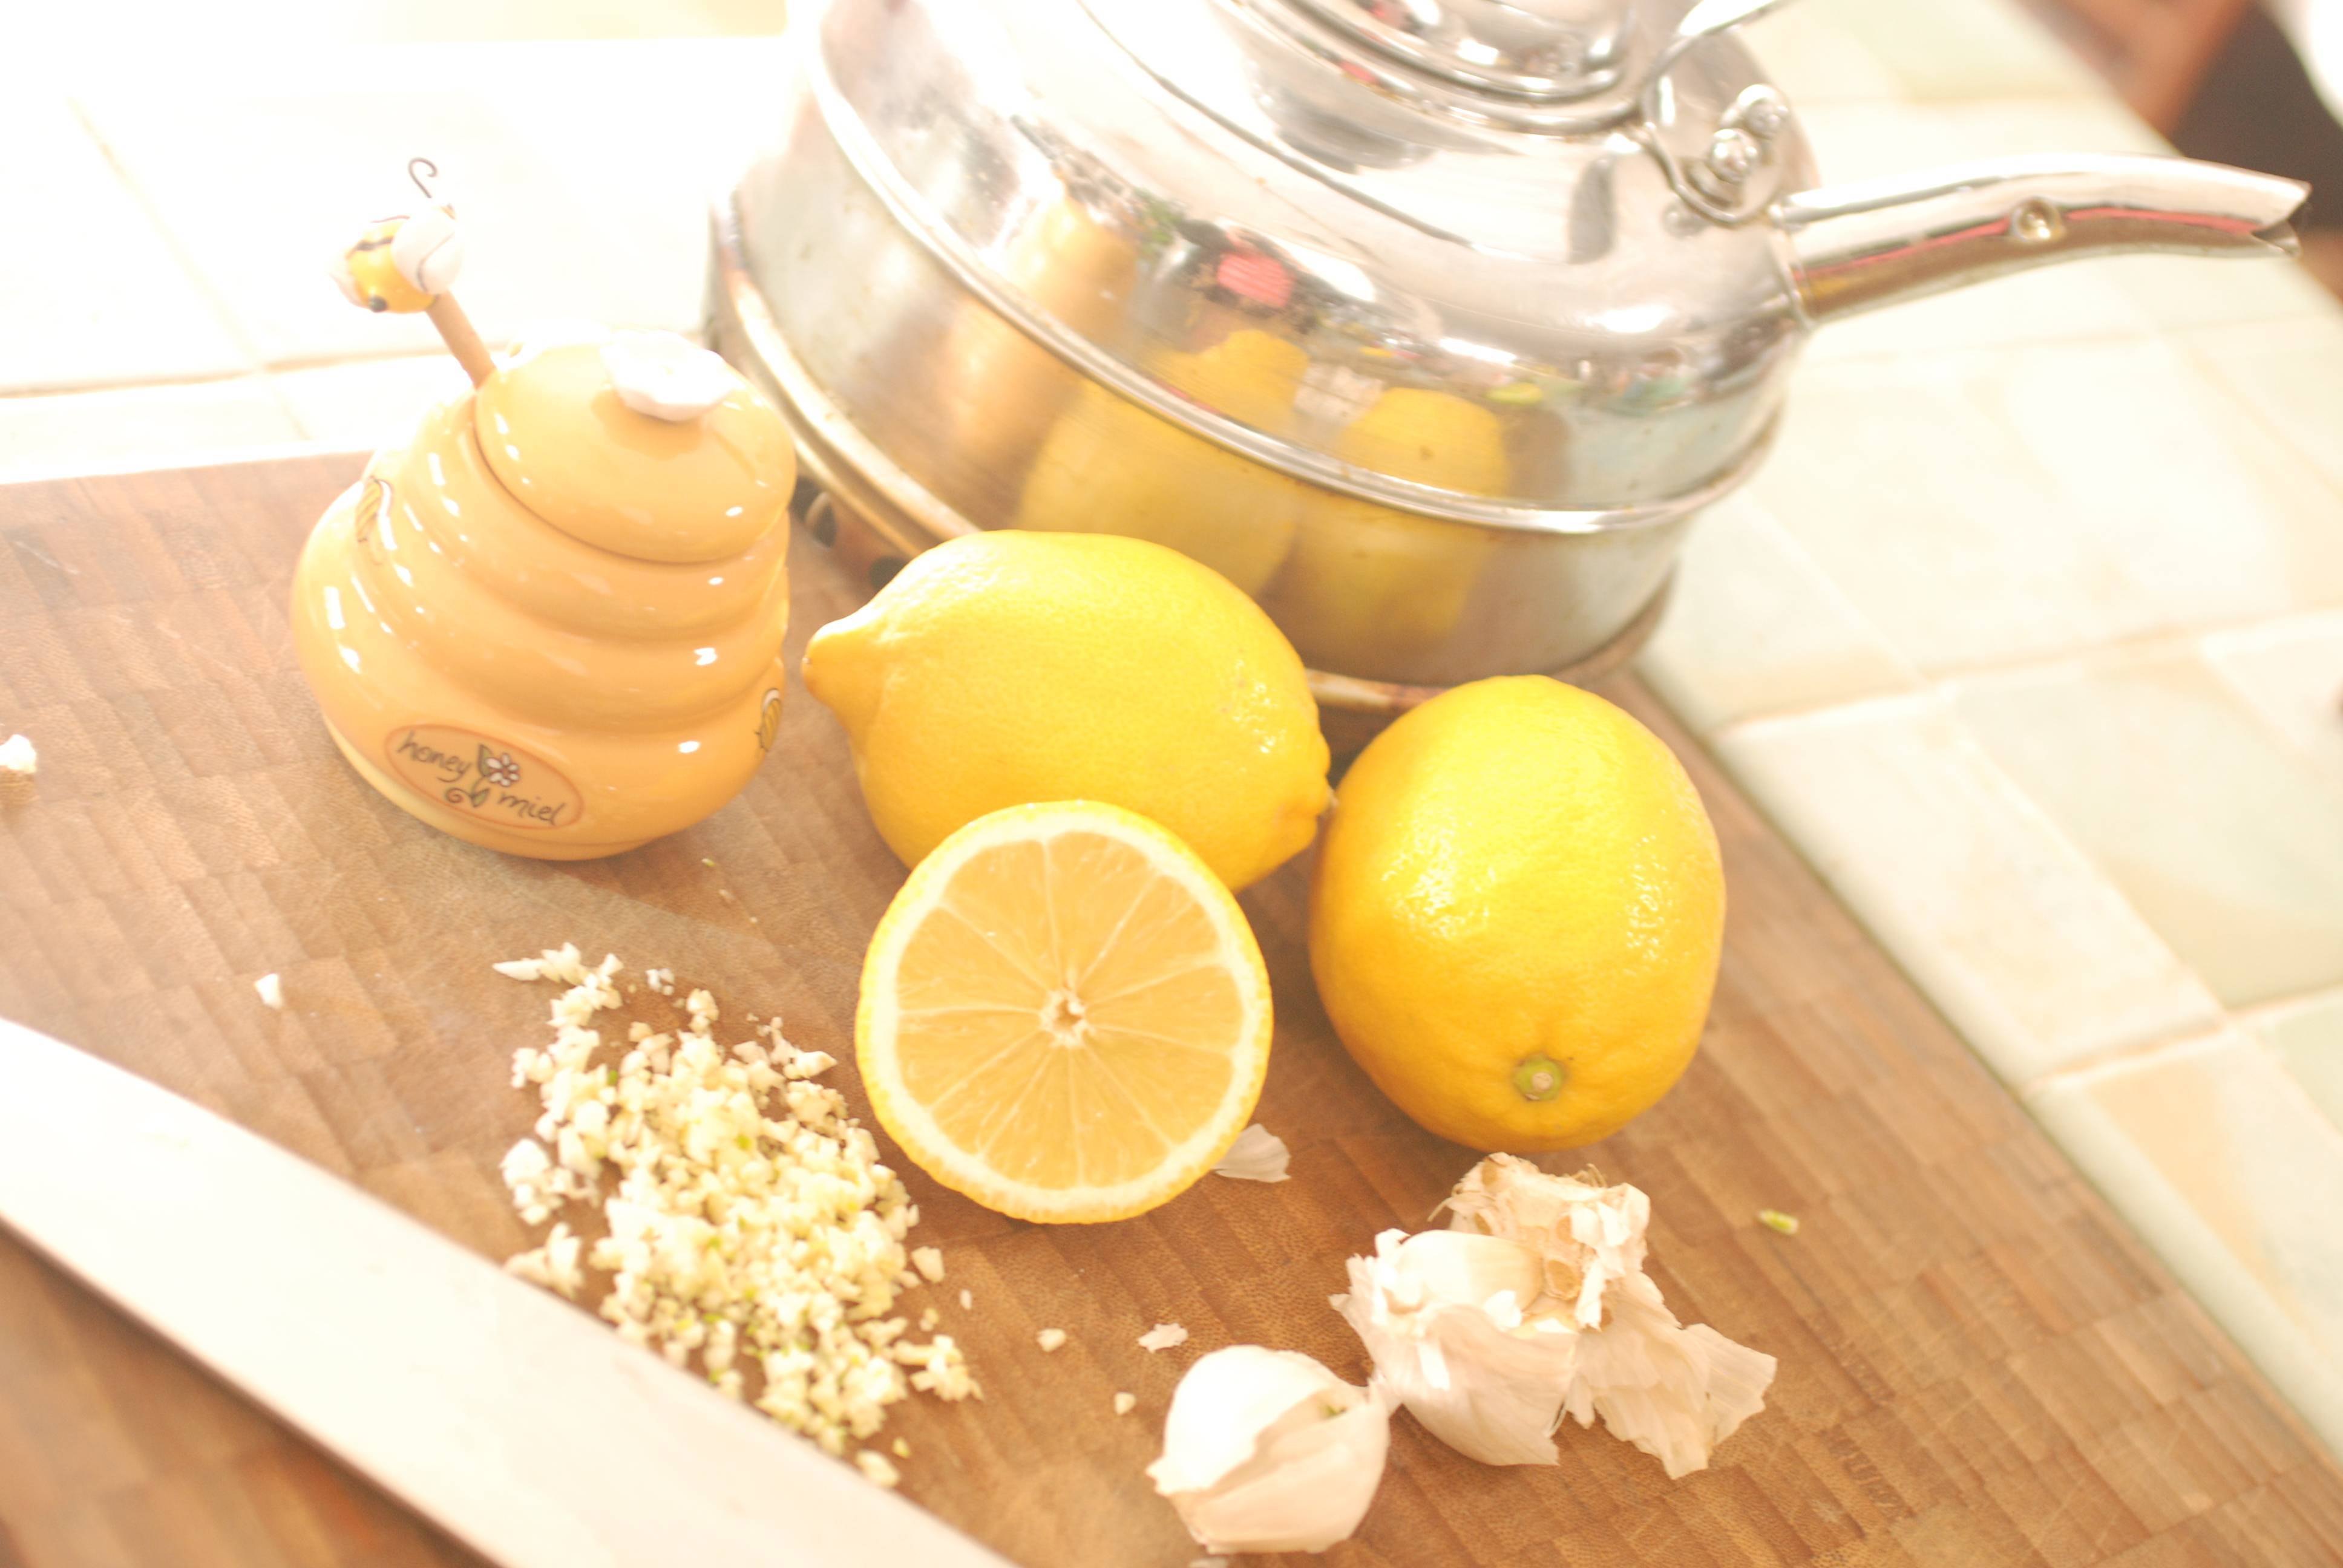 Имбирь, лимон, мед, чеснок для чистки сосудов: польза и вред каждого ингредиента, рекомендации к применению и противопоказания, пошаговые рецепты с пропорциями русский фермер